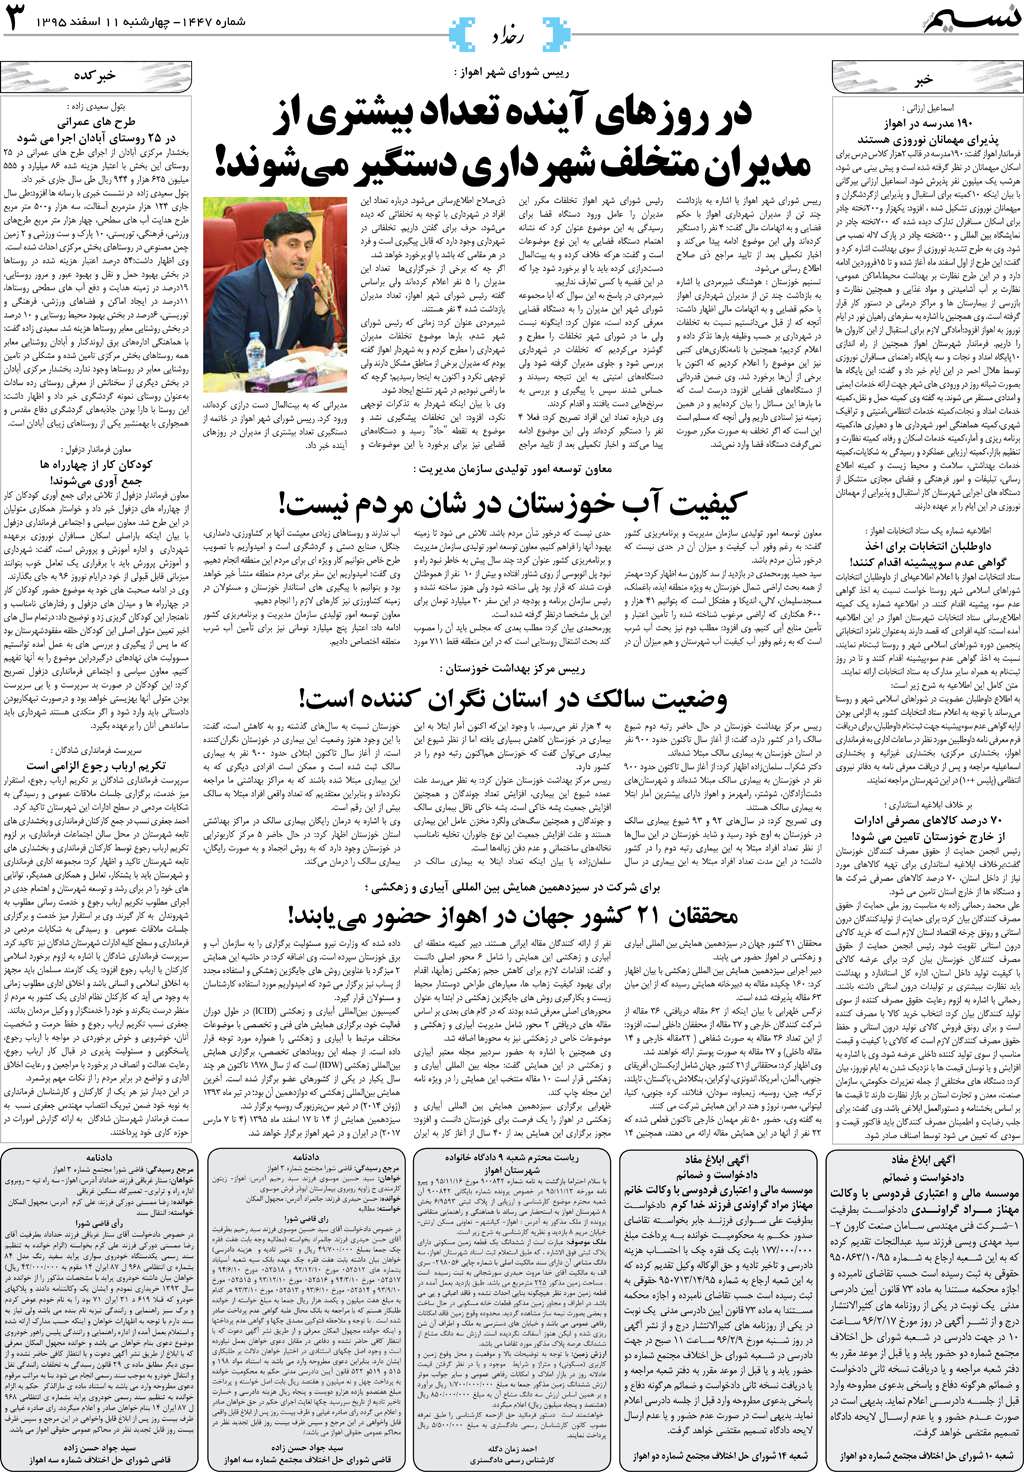 صفحه رخداد روزنامه نسیم شماره 1447